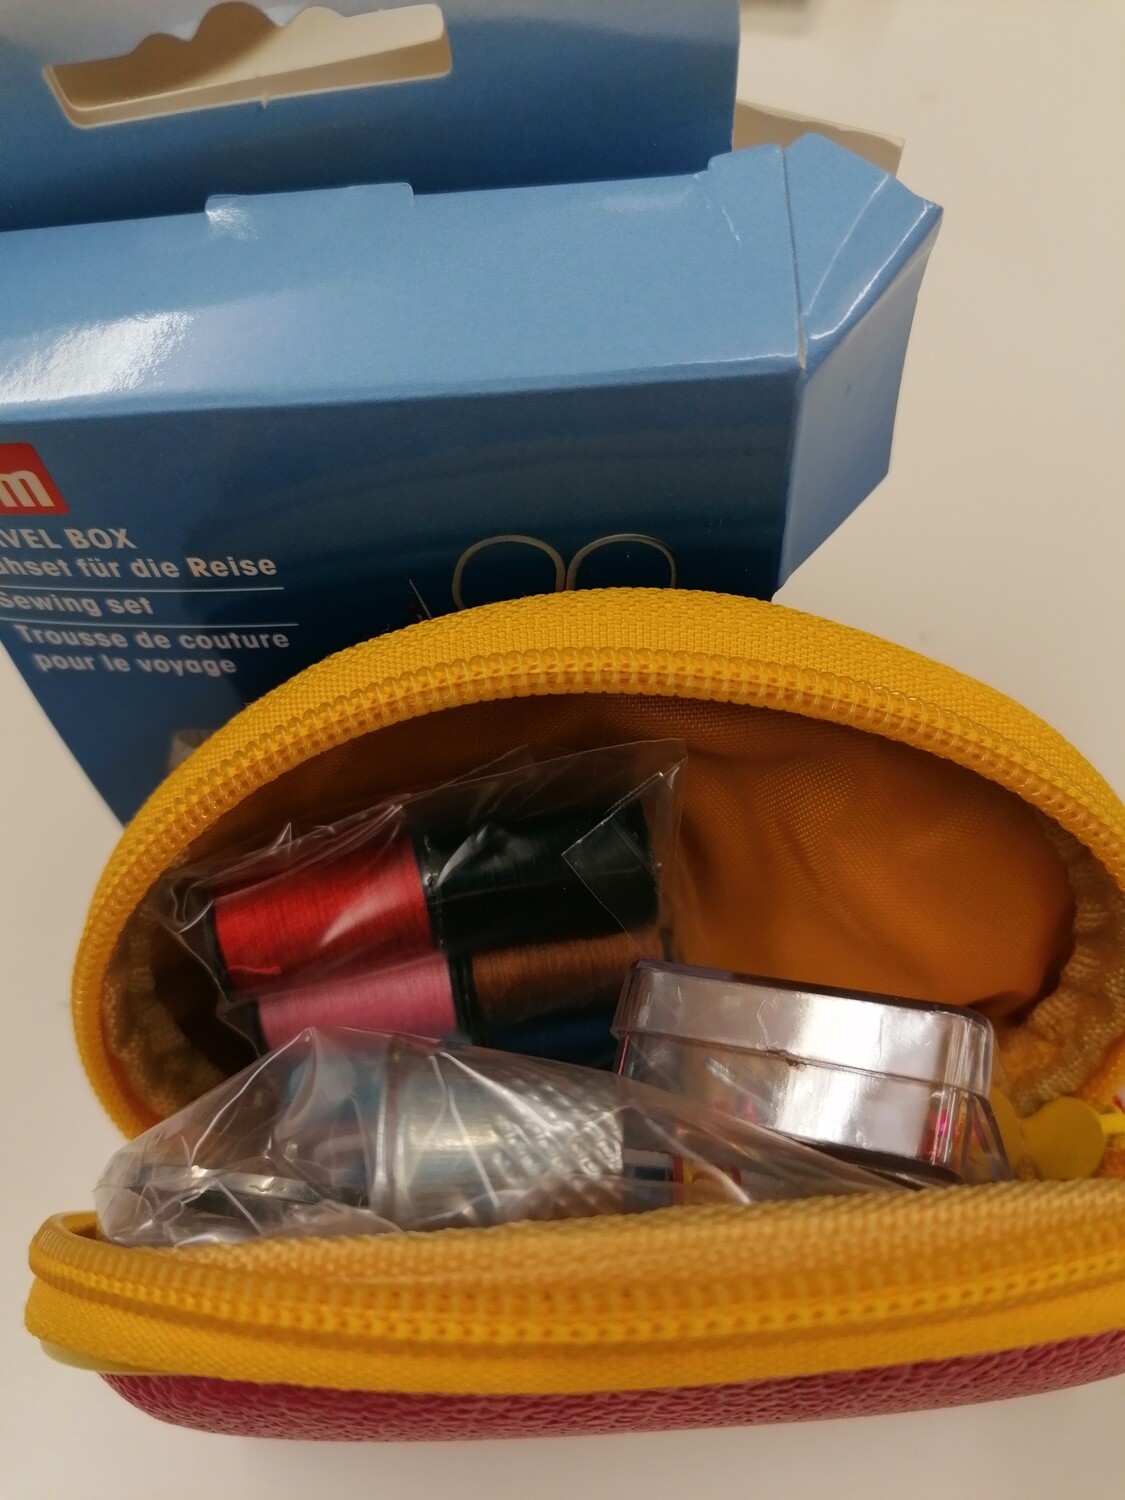 Prym travel sewing kit